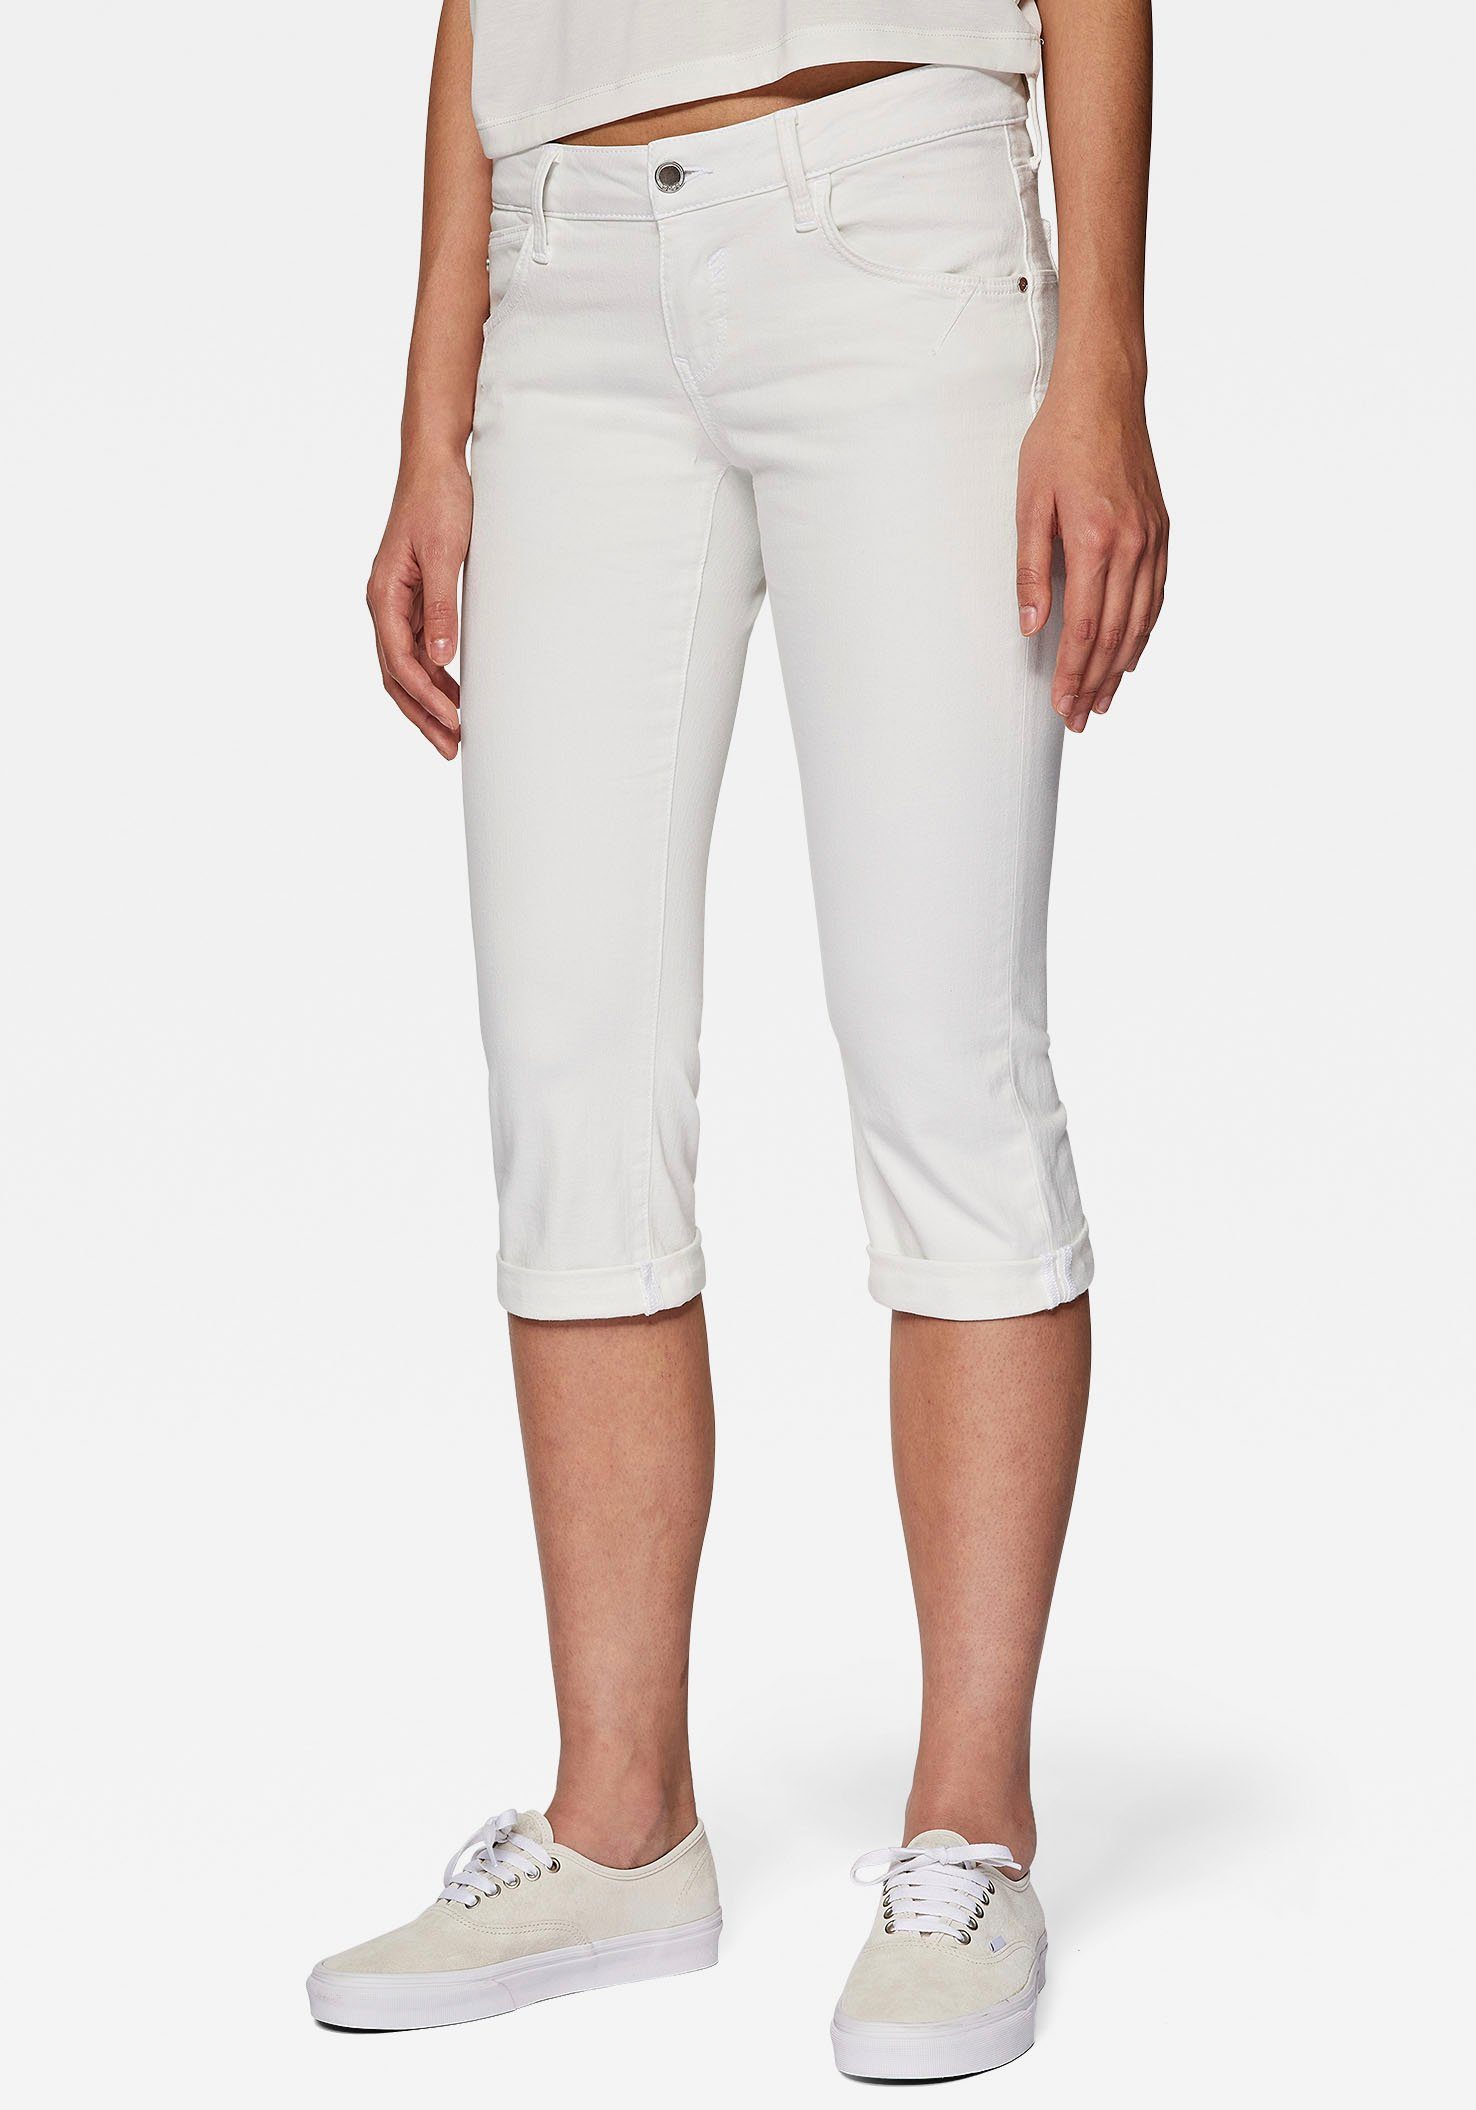 Weiße Damen Capri-Jeans online kaufen | OTTO